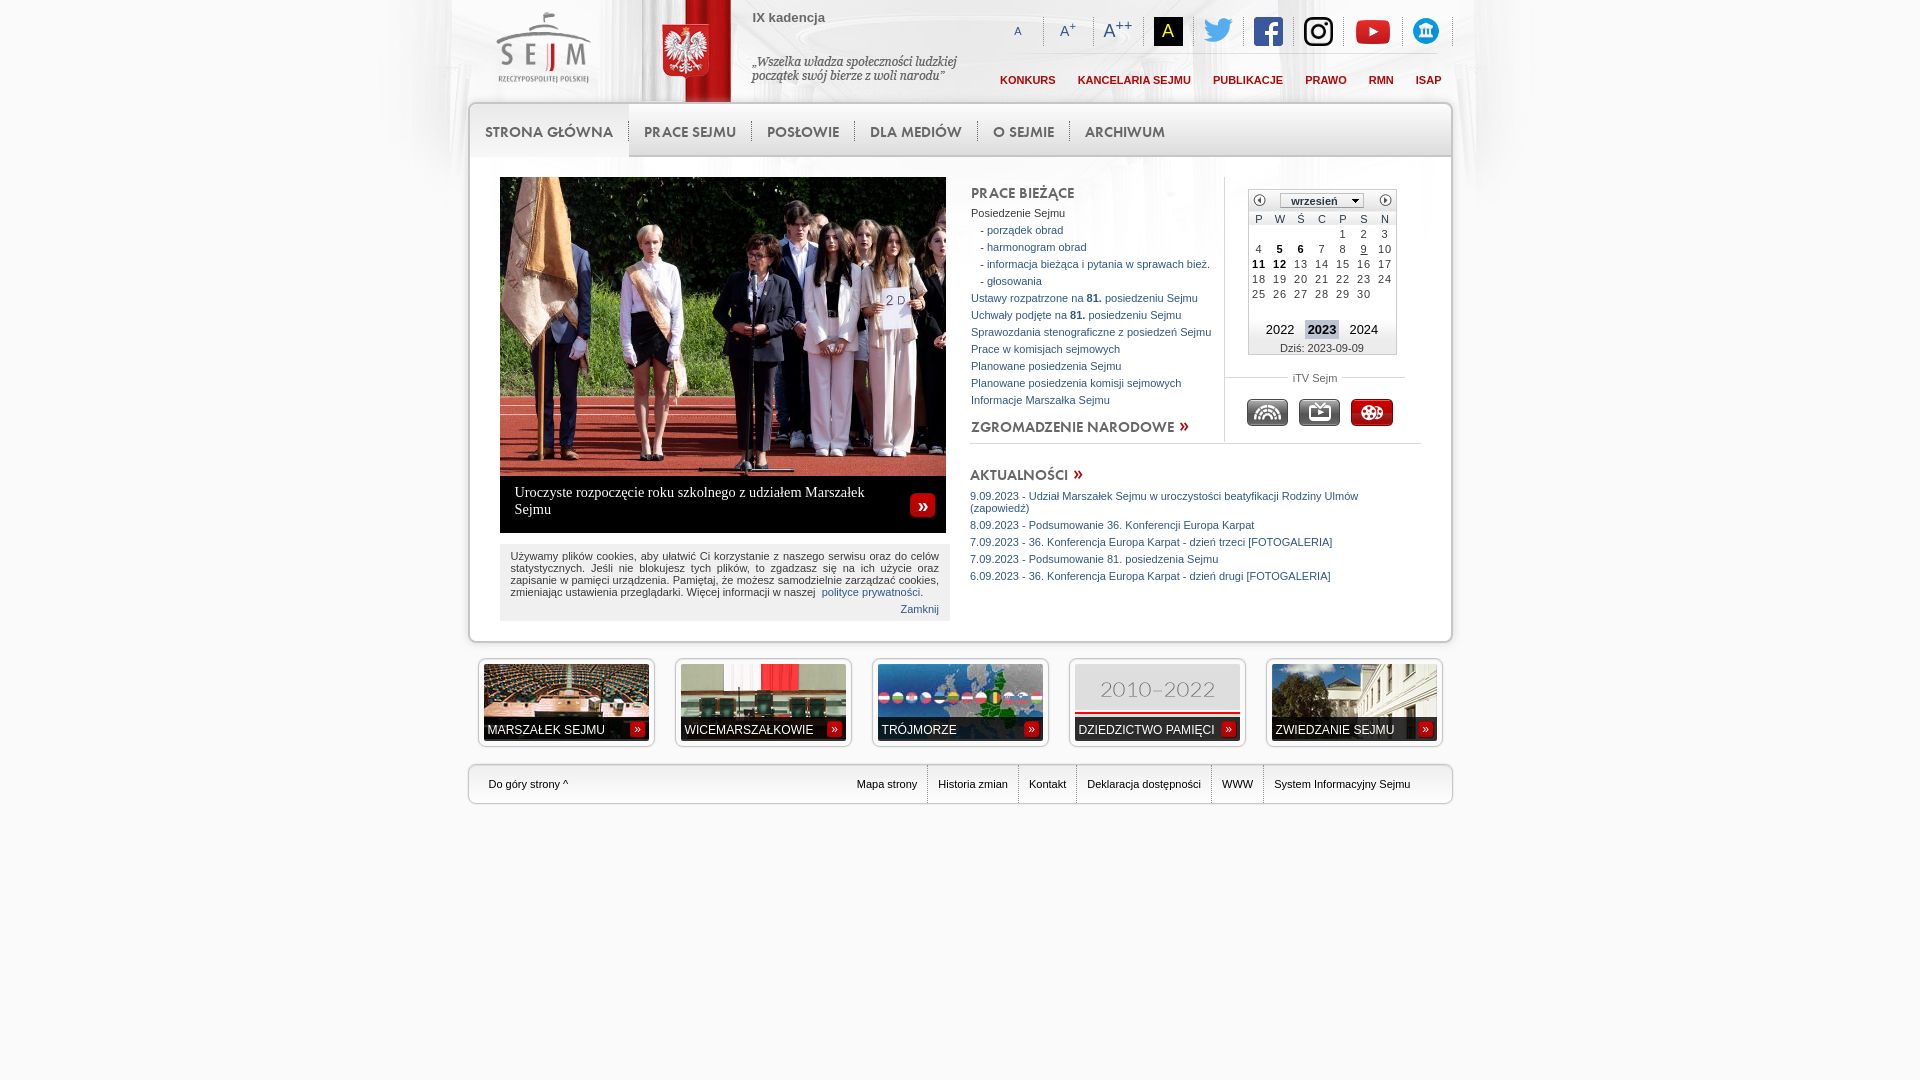 Status do site sejm.gov.pl está   ONLINE